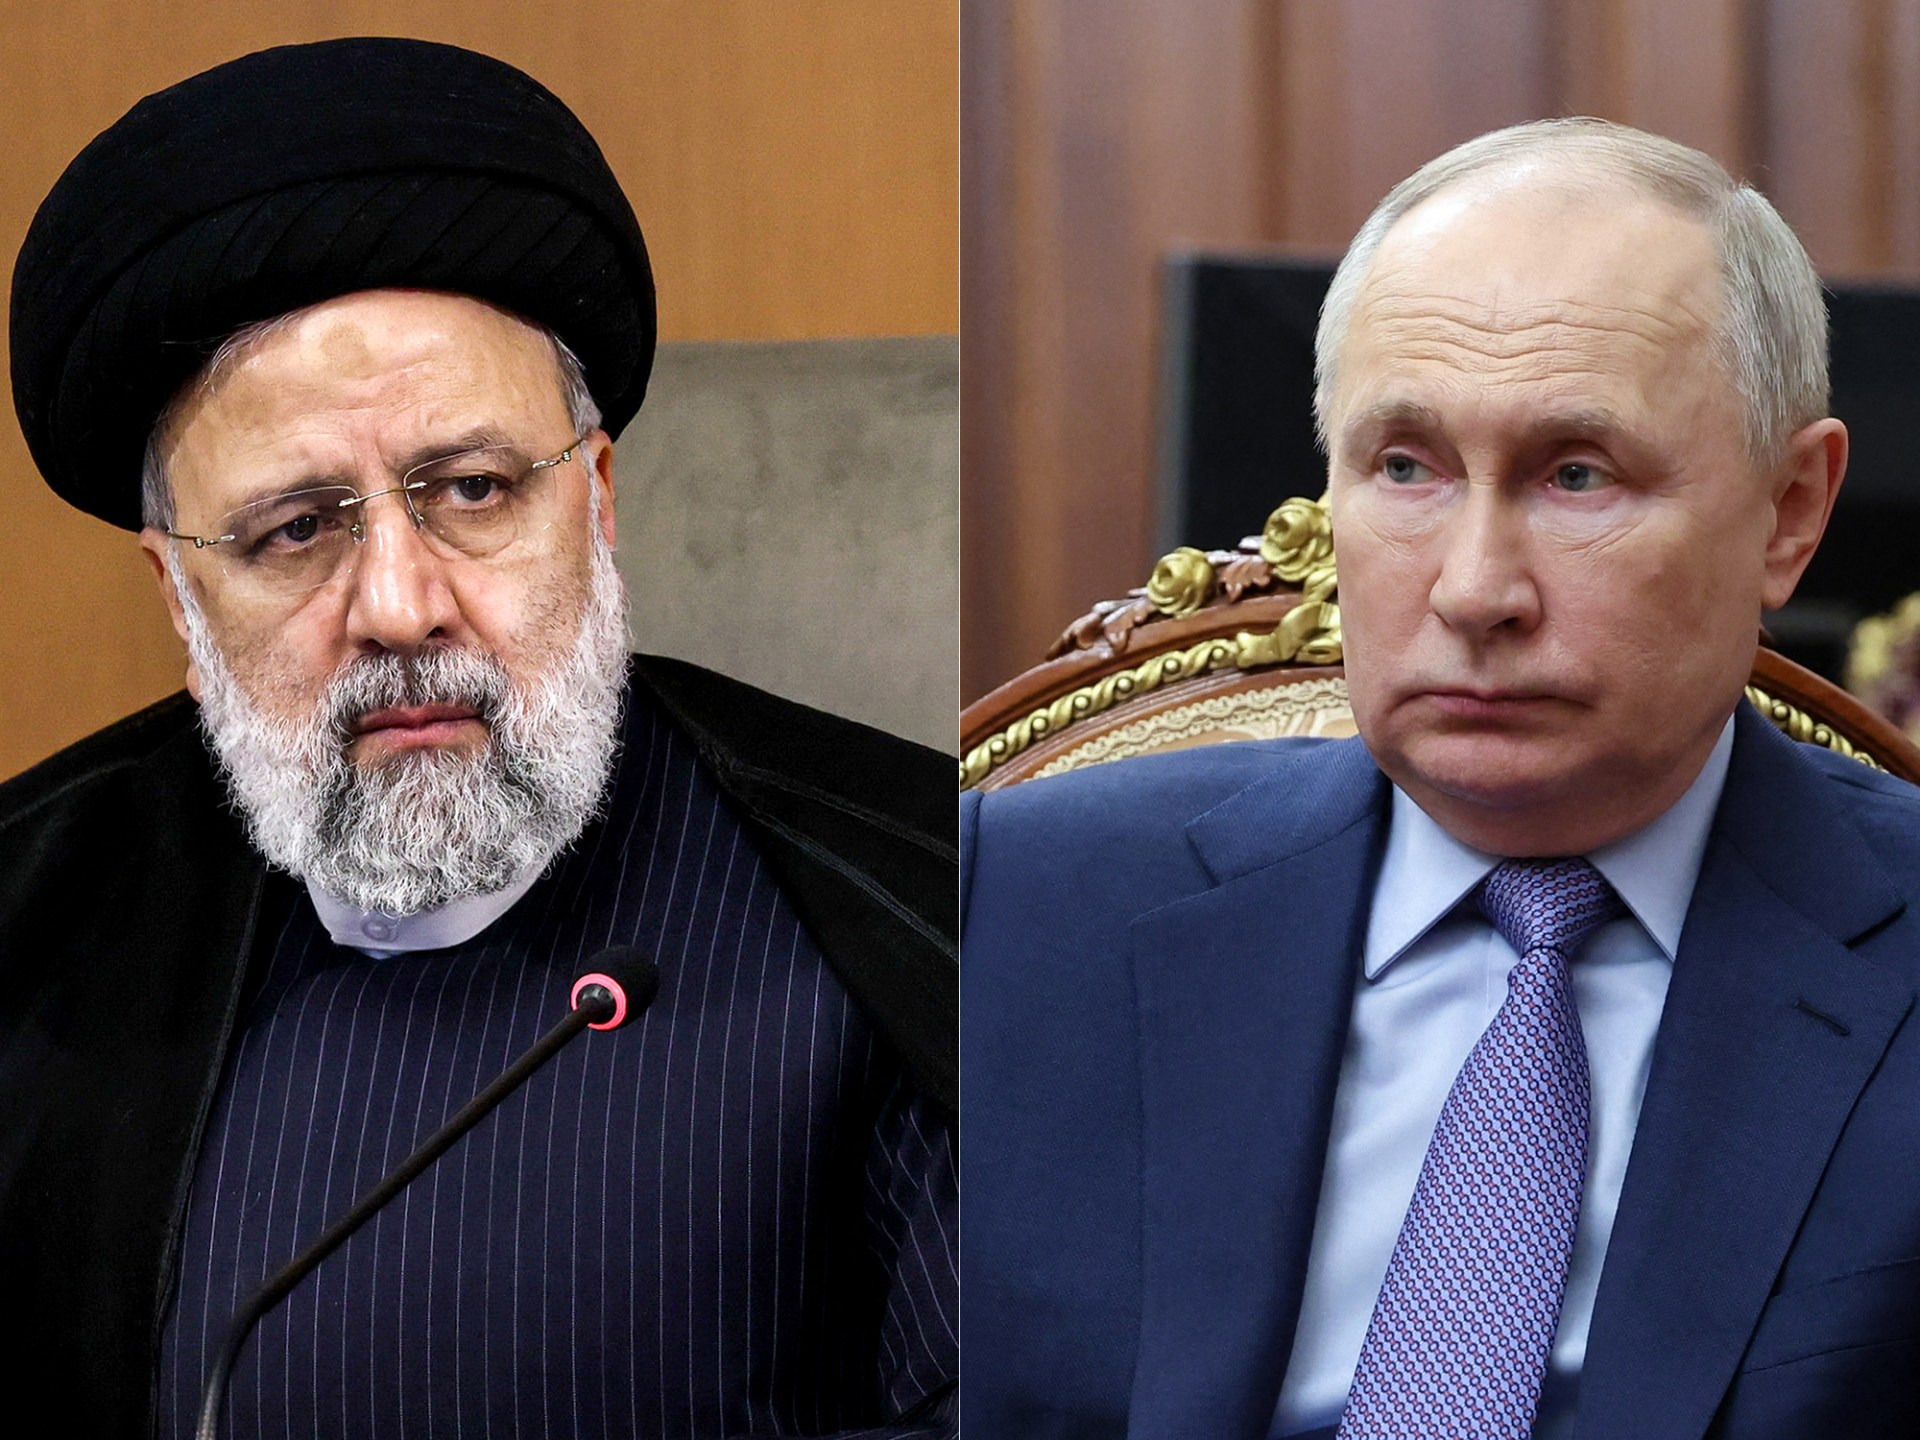 Ruský Putin nalieha na pokoj v rozhovore s iránskym Raisim, keďže napätie stúpa |  správy